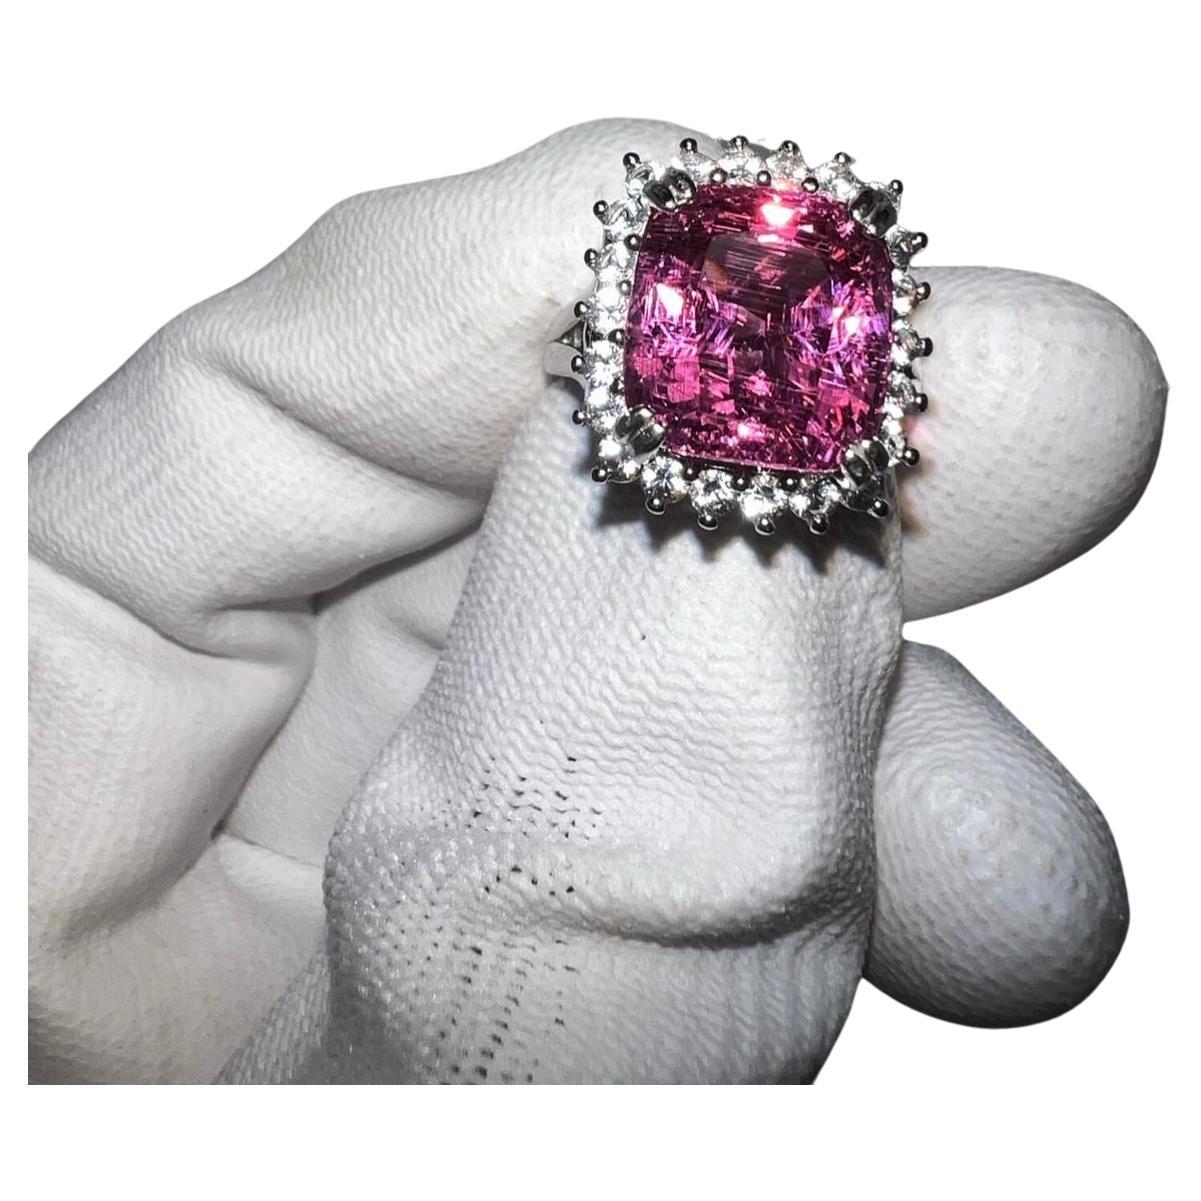 Rare 10.3 Carat Purplish Pink Spinel Coctail Ring, Gemstone is GIA Certified